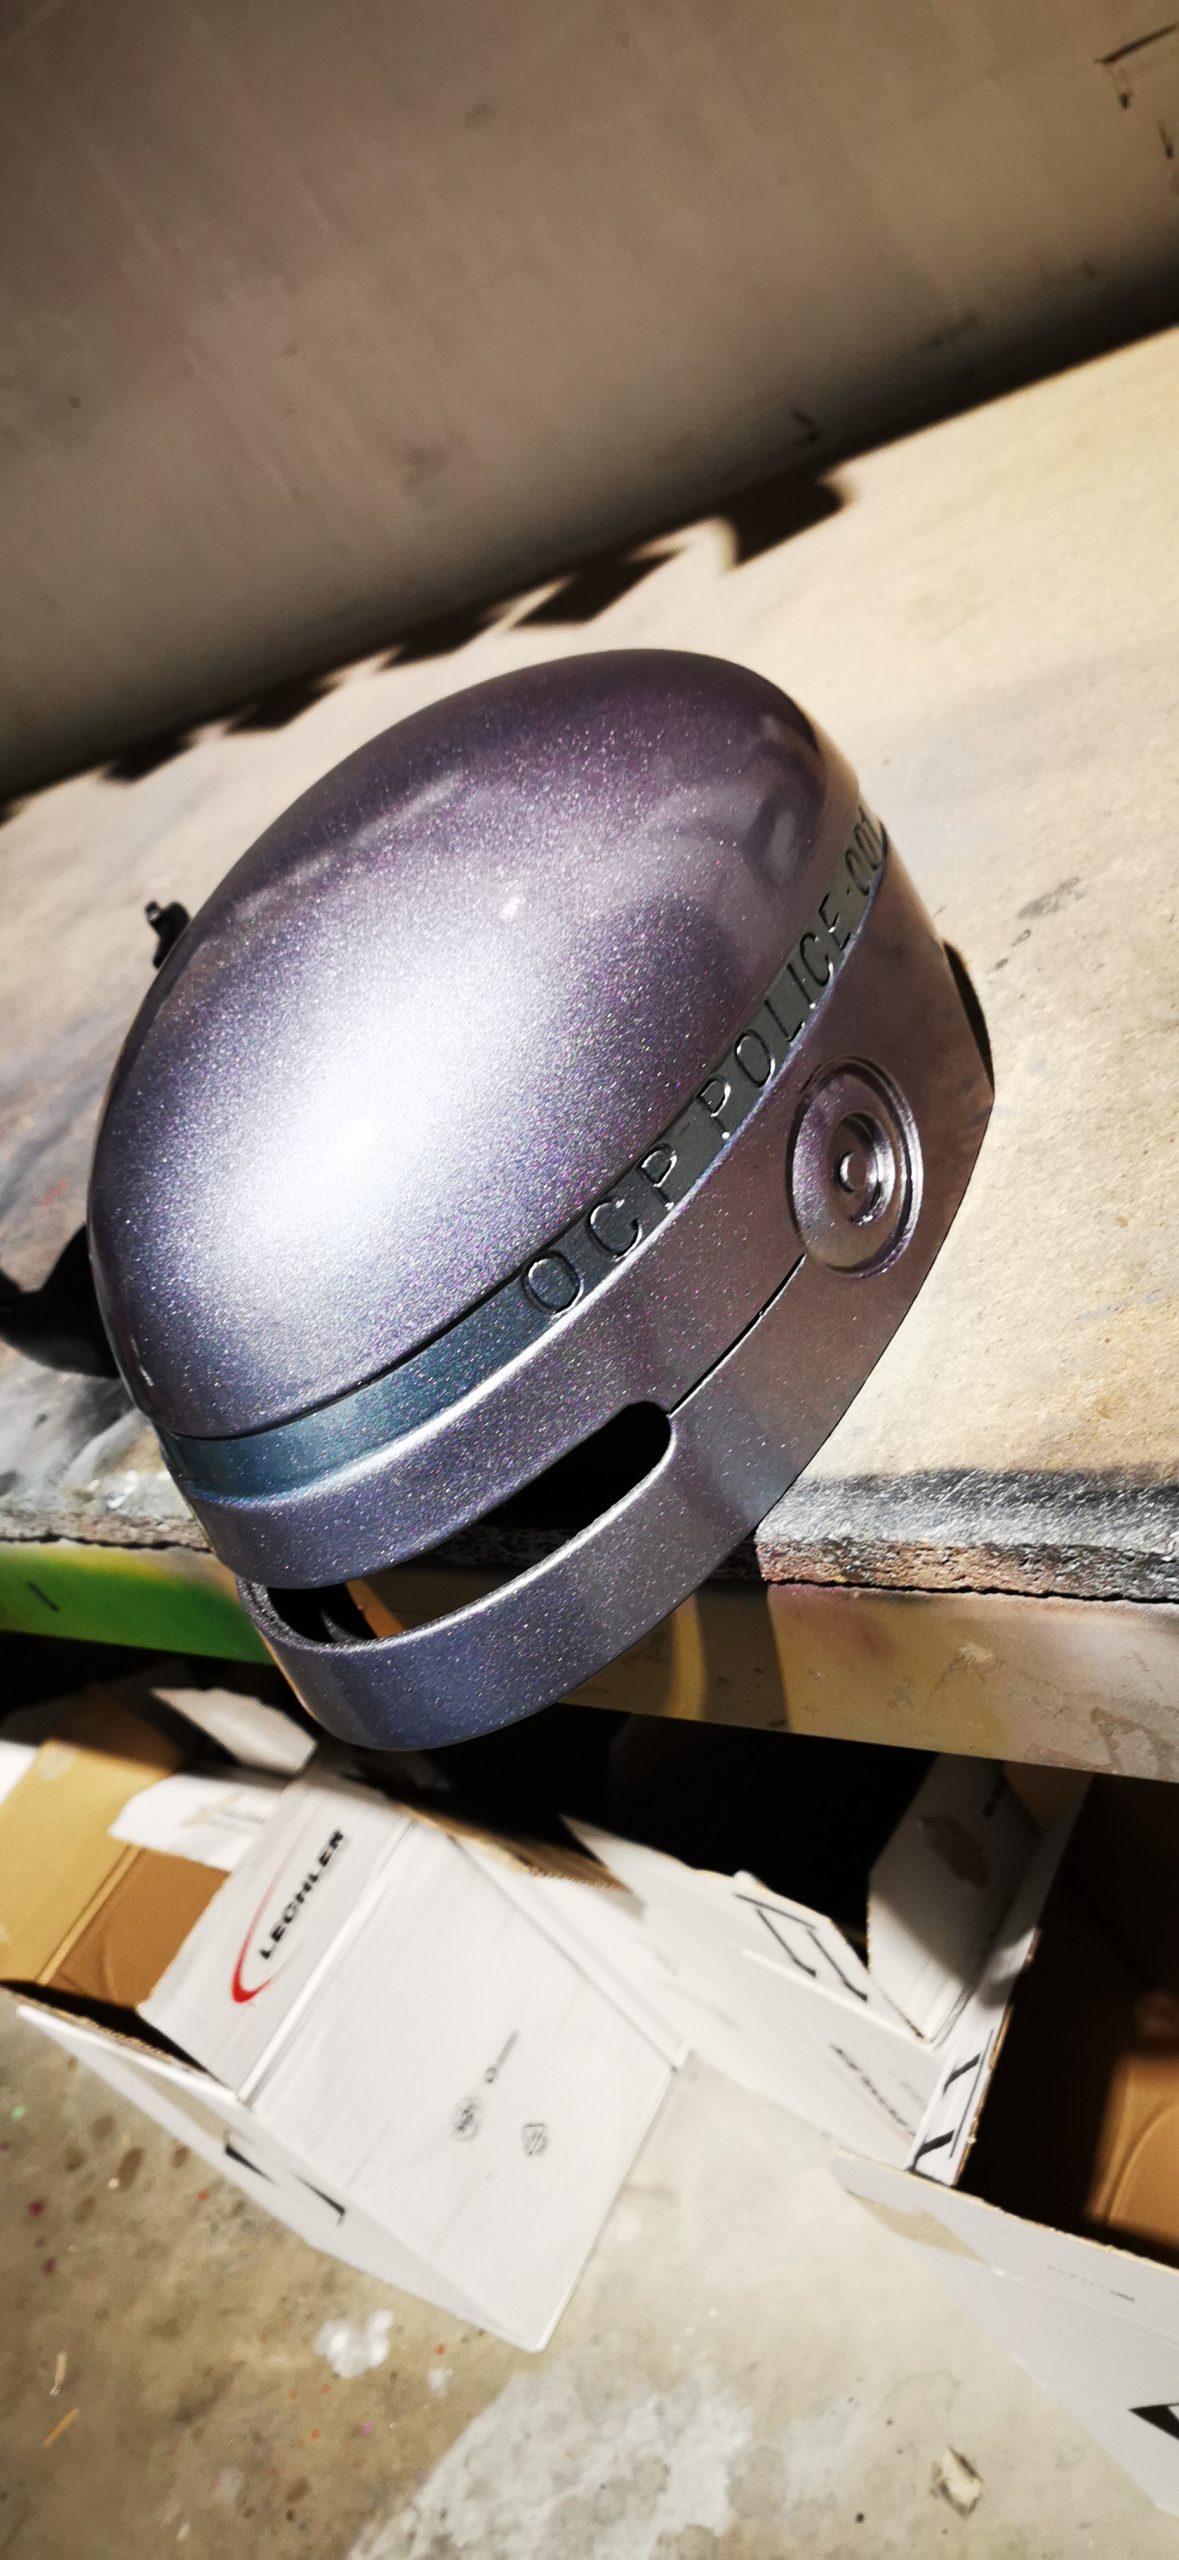 metallic purple paint on helmet